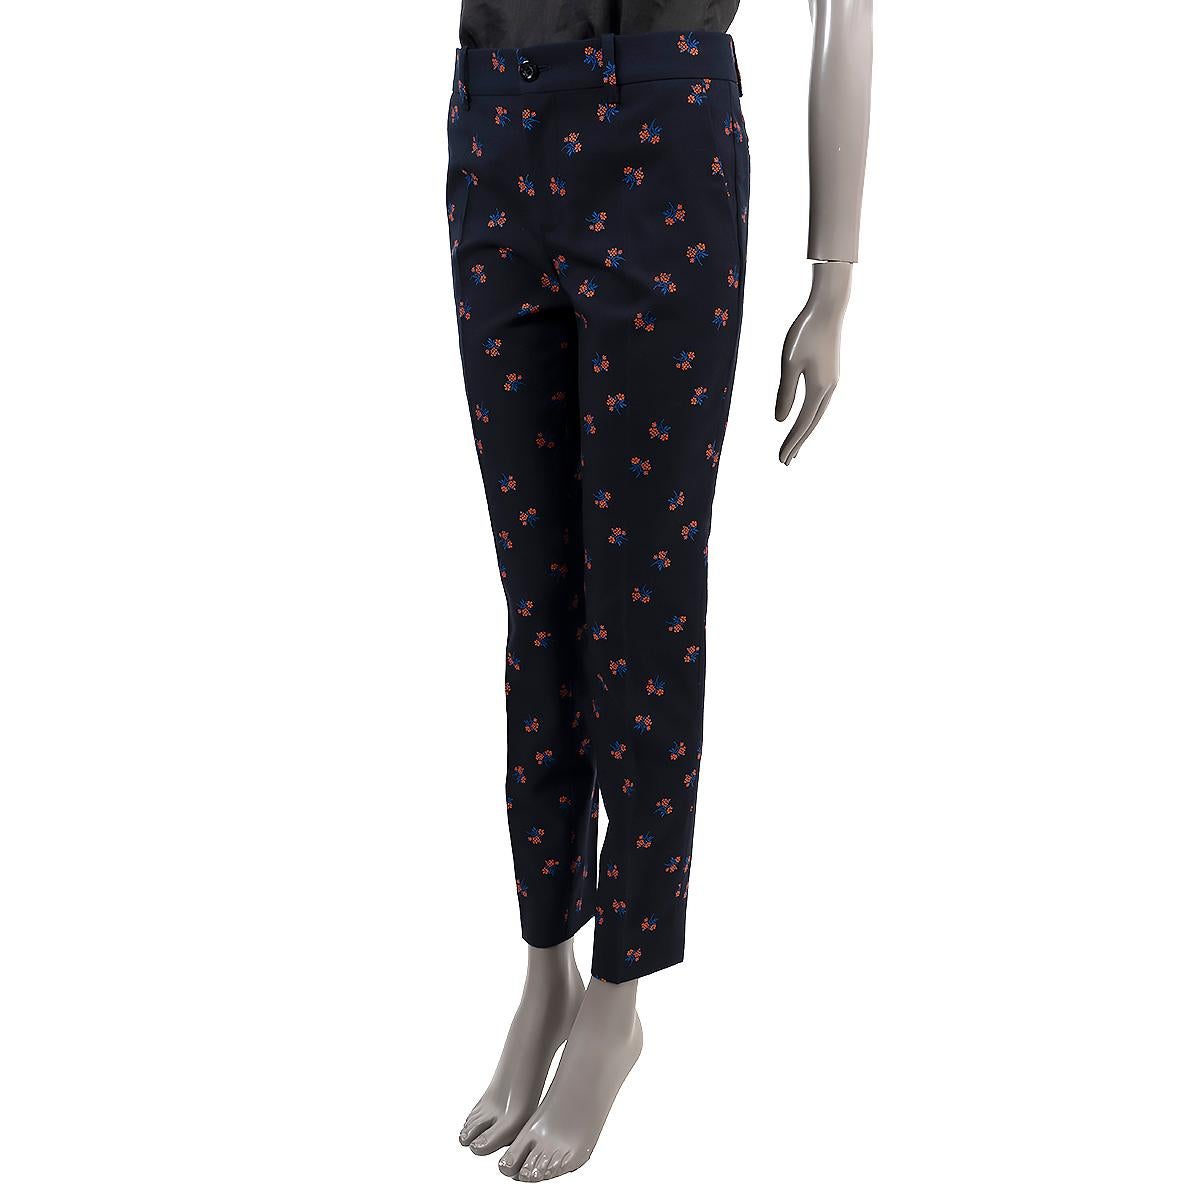 100% authentische Gucci Marguerite Fil Coupé Hose mit Blumenmuster aus navyblauer Baumwolle (67%) und Wolle (33%). Mit Gürtelschlaufen und zwei Einschubtaschen an den Seiten und zwei Einschubtaschen auf der Rückseite. Zu öffnen mit einem Knopf und